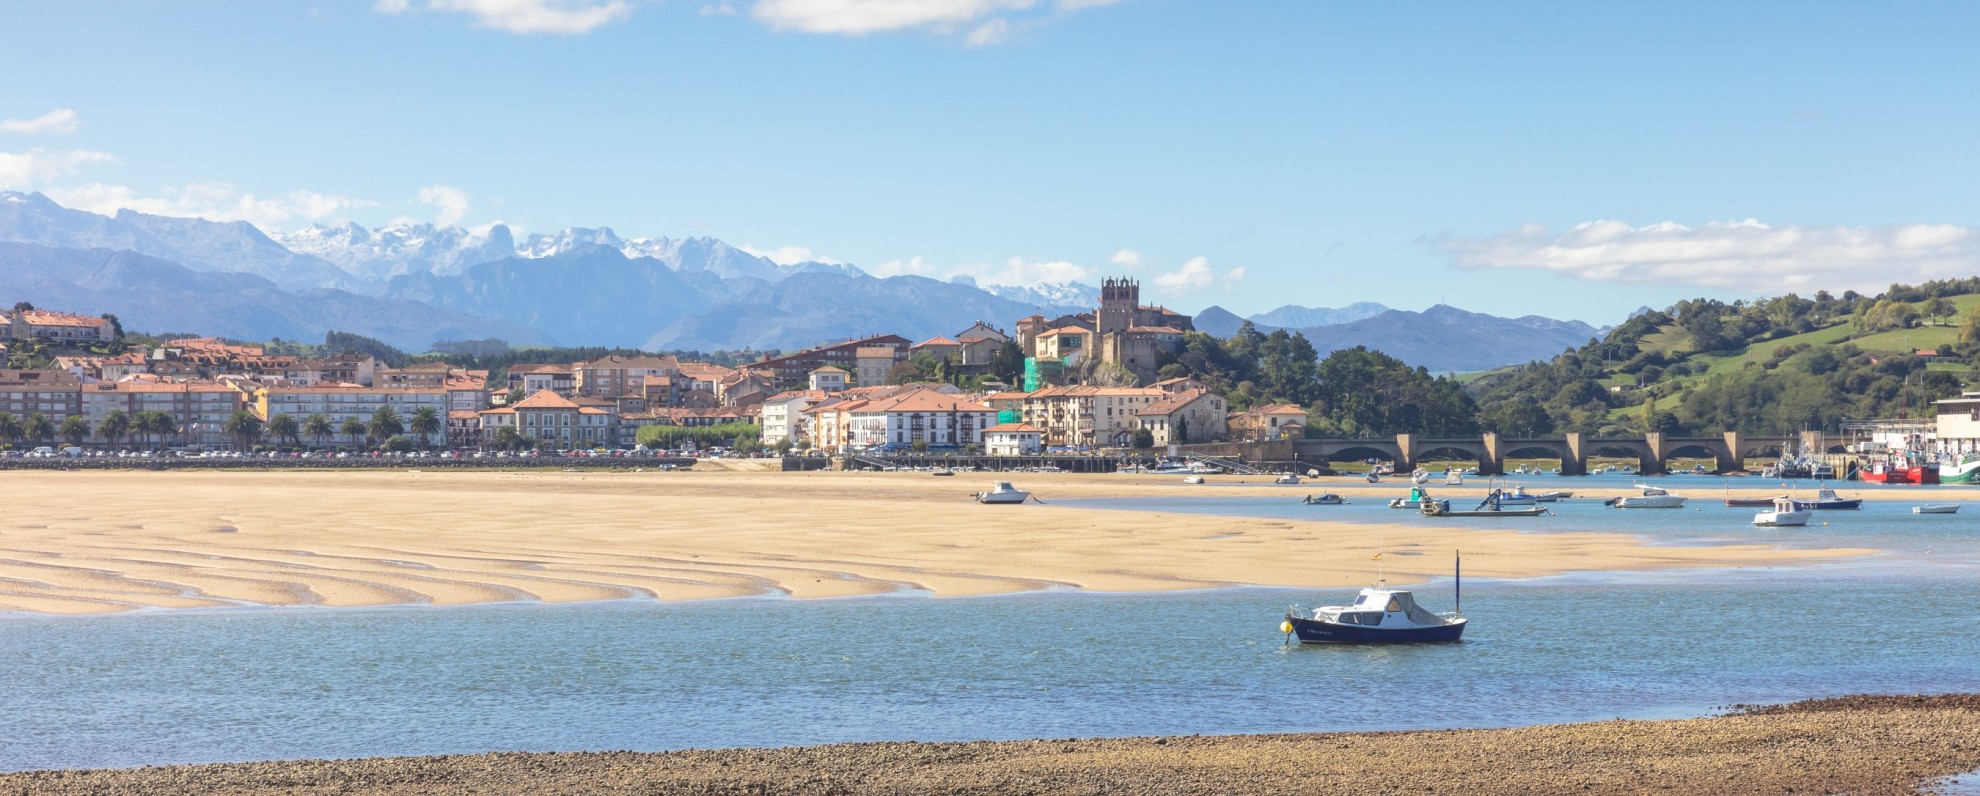 A view across the river estuary towards San Vicente de le Barquera, Cantabria